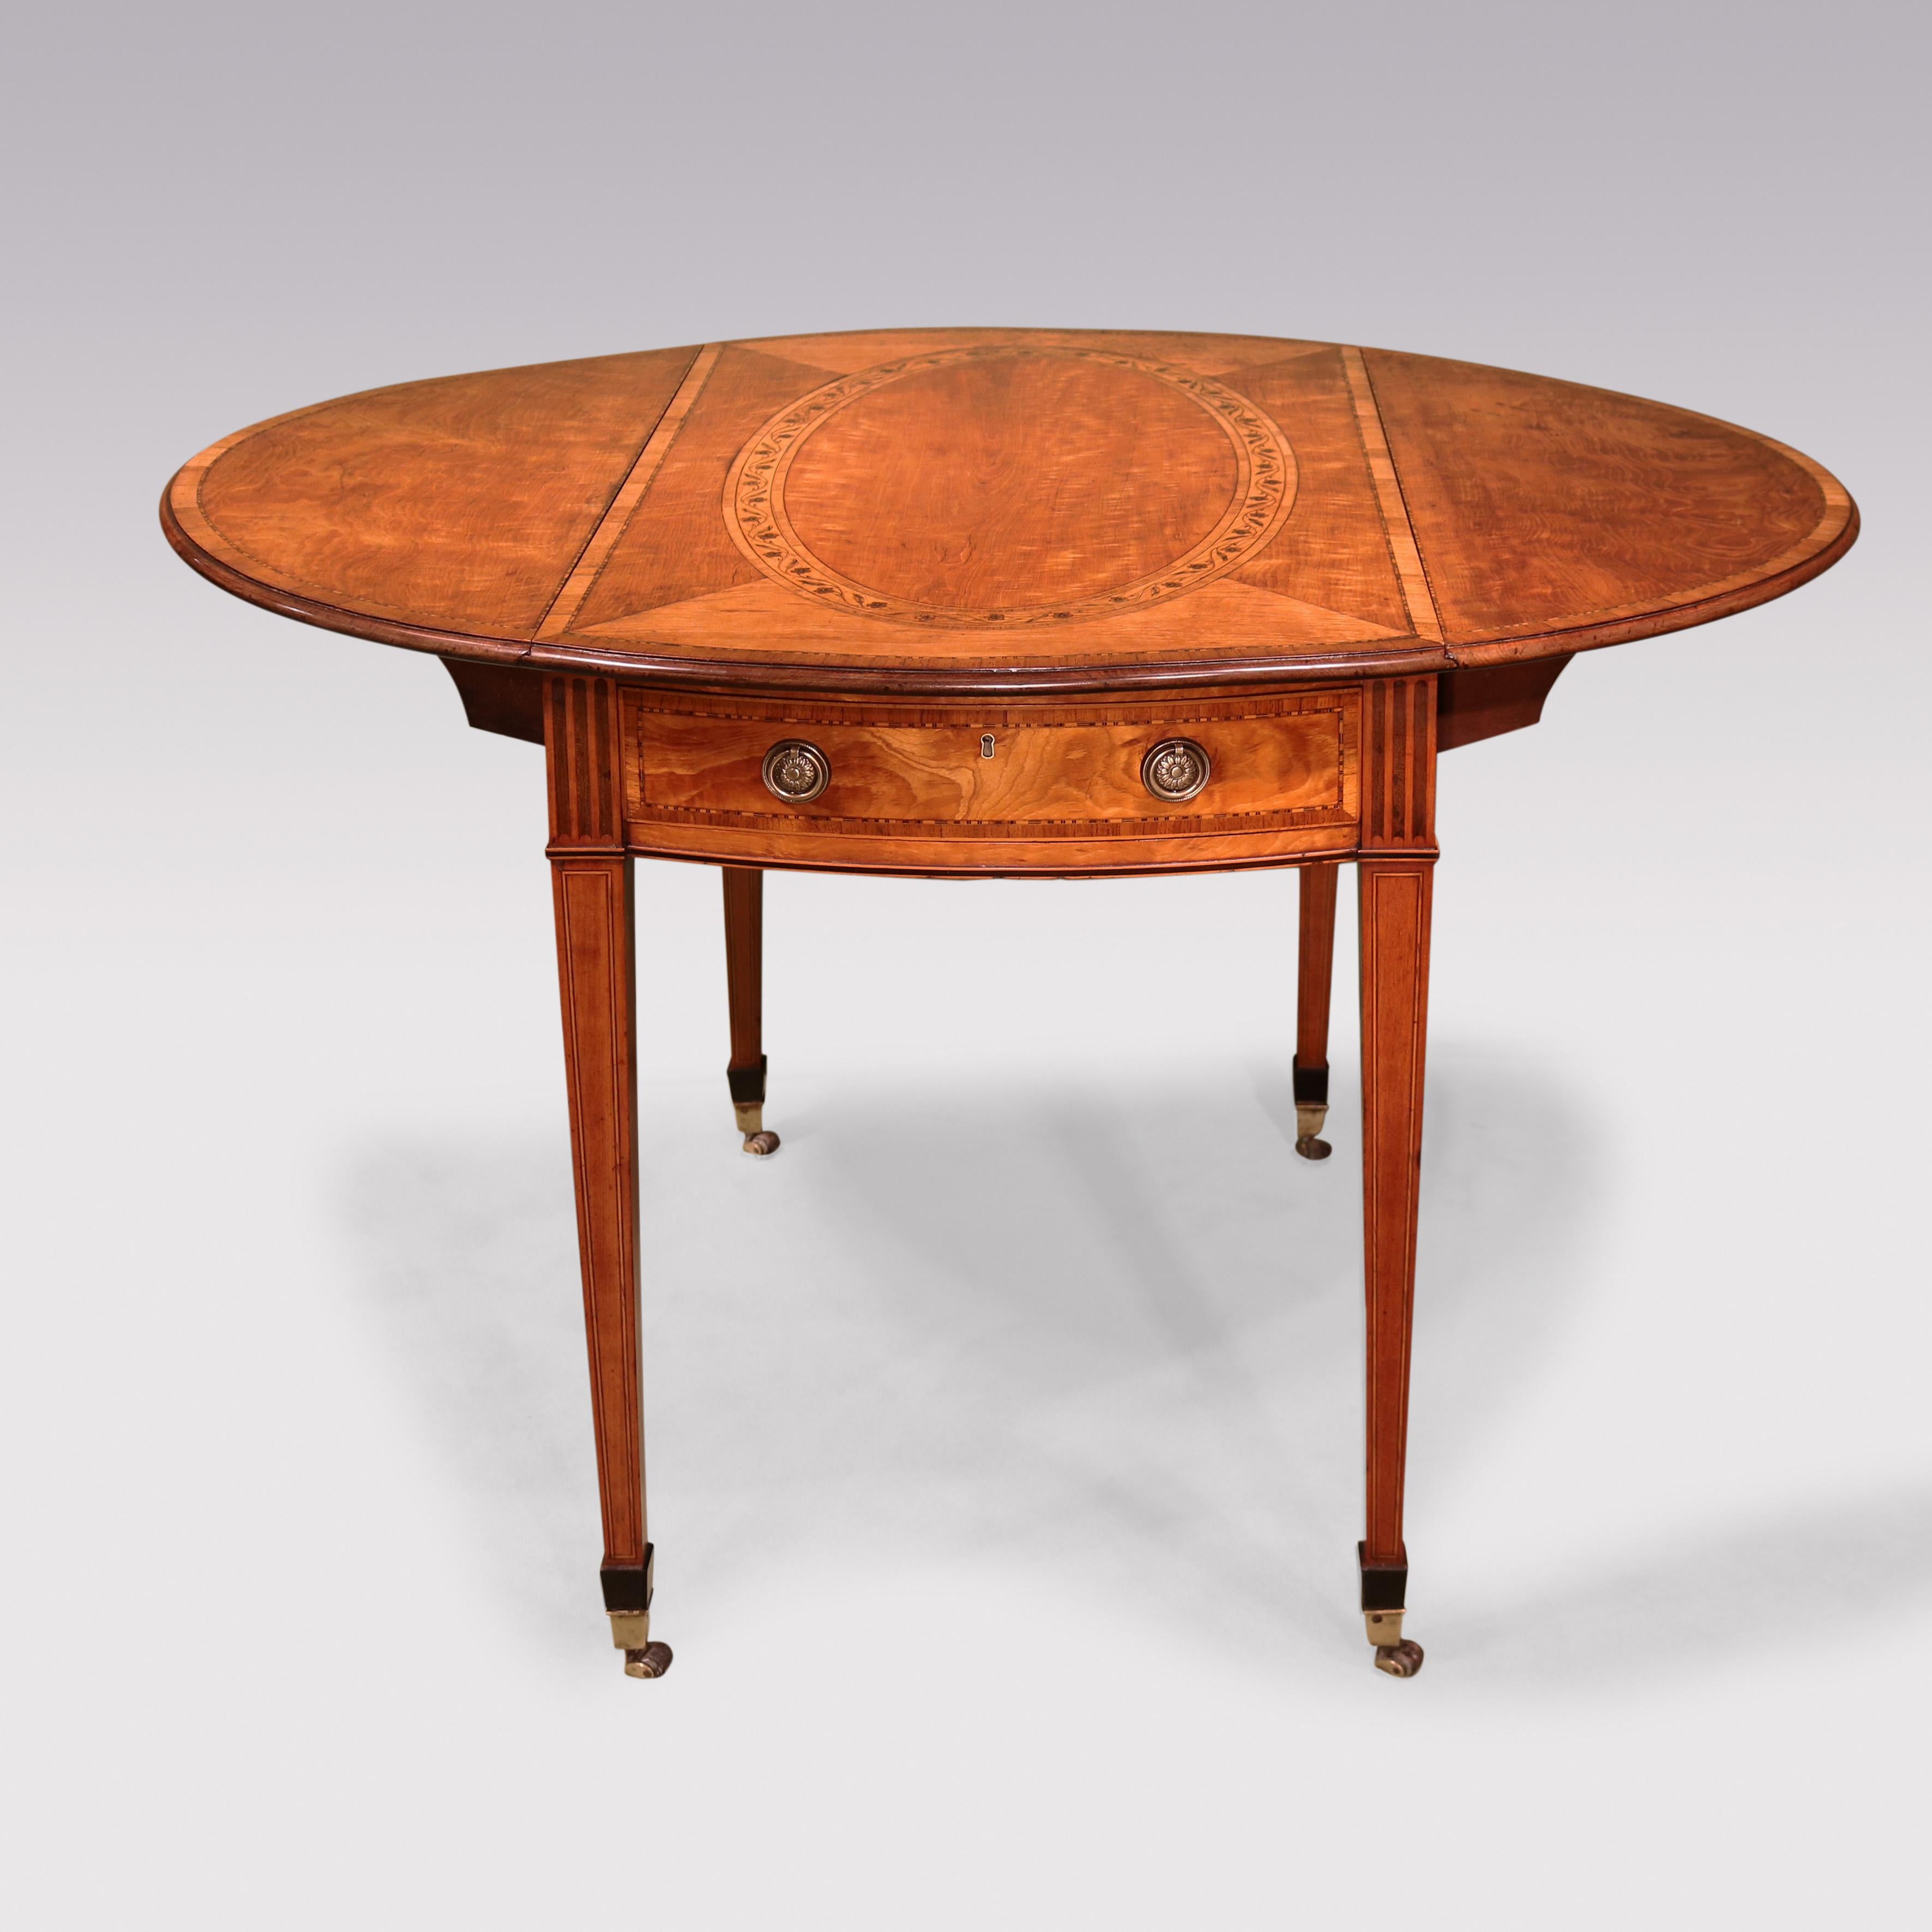 Ein feiner Pembroke-Tisch aus Satinholz des späten 18. Jahrhunderts mit Buchsbaum- und Ebenholzbespannung, mit einer ovalen Platte aus Tulpenholz mit Querbändern und Mahagoniformen, mit Parkettbespannung und einem auf Gehrung geschnittenen